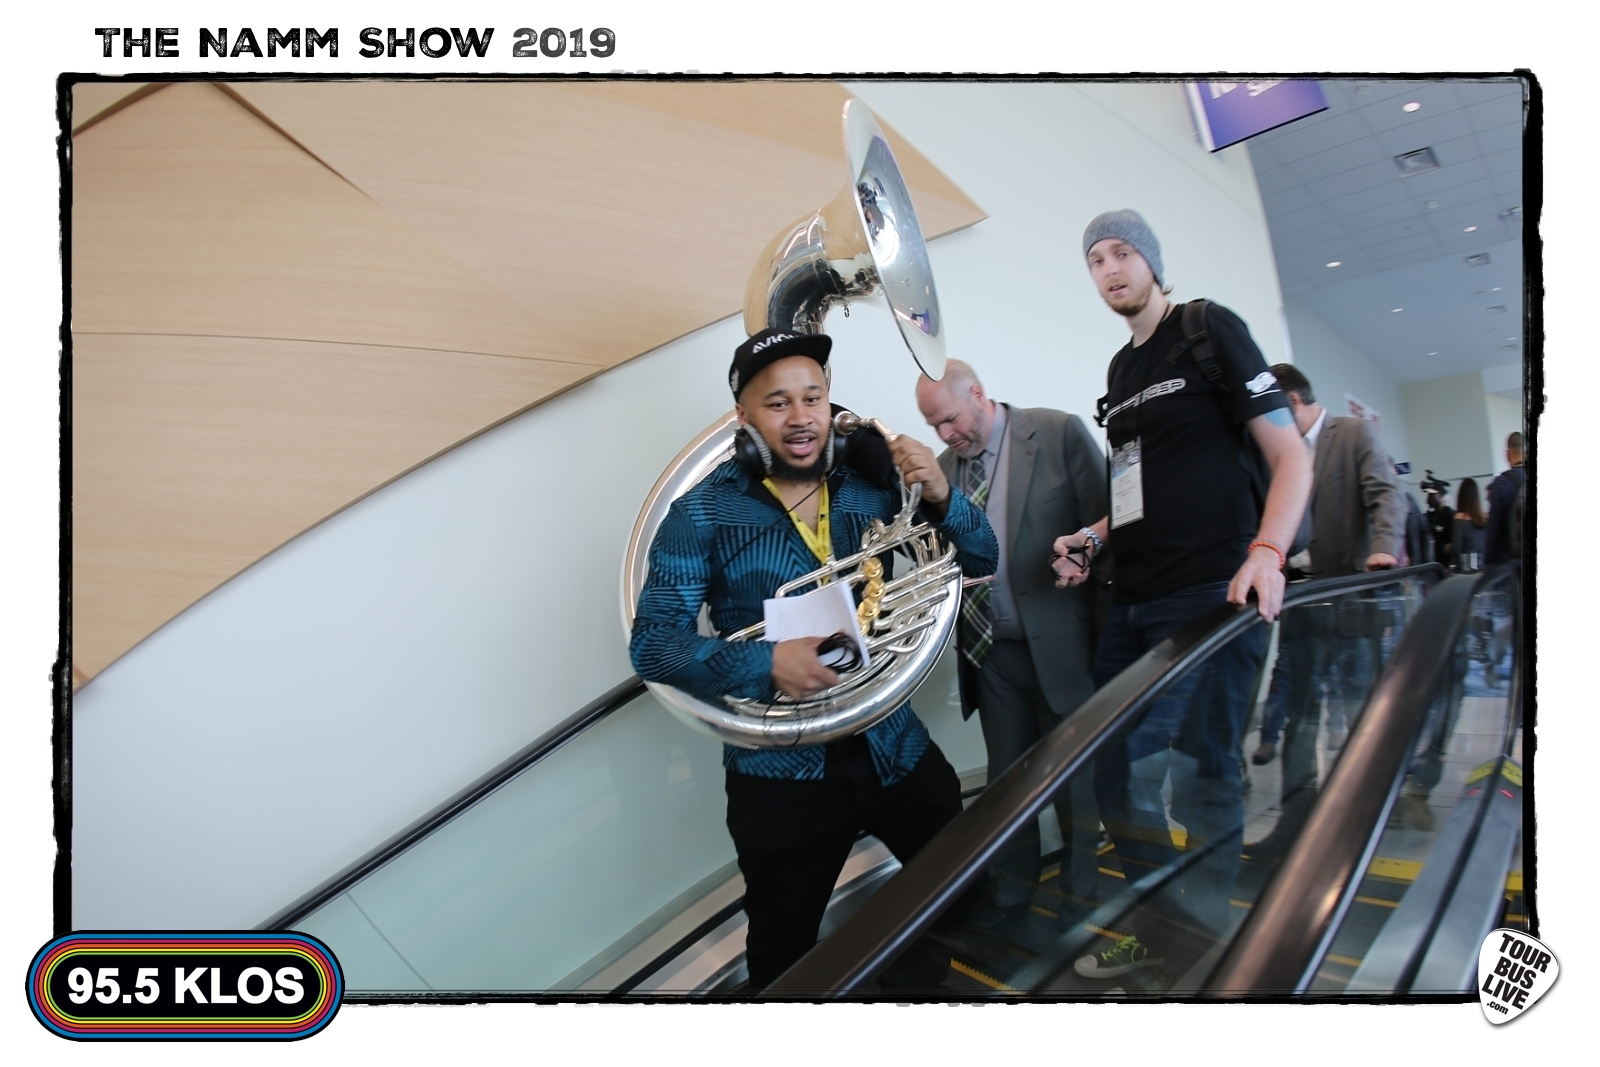 NAMM 2019. © 2019 TourBusLive.com